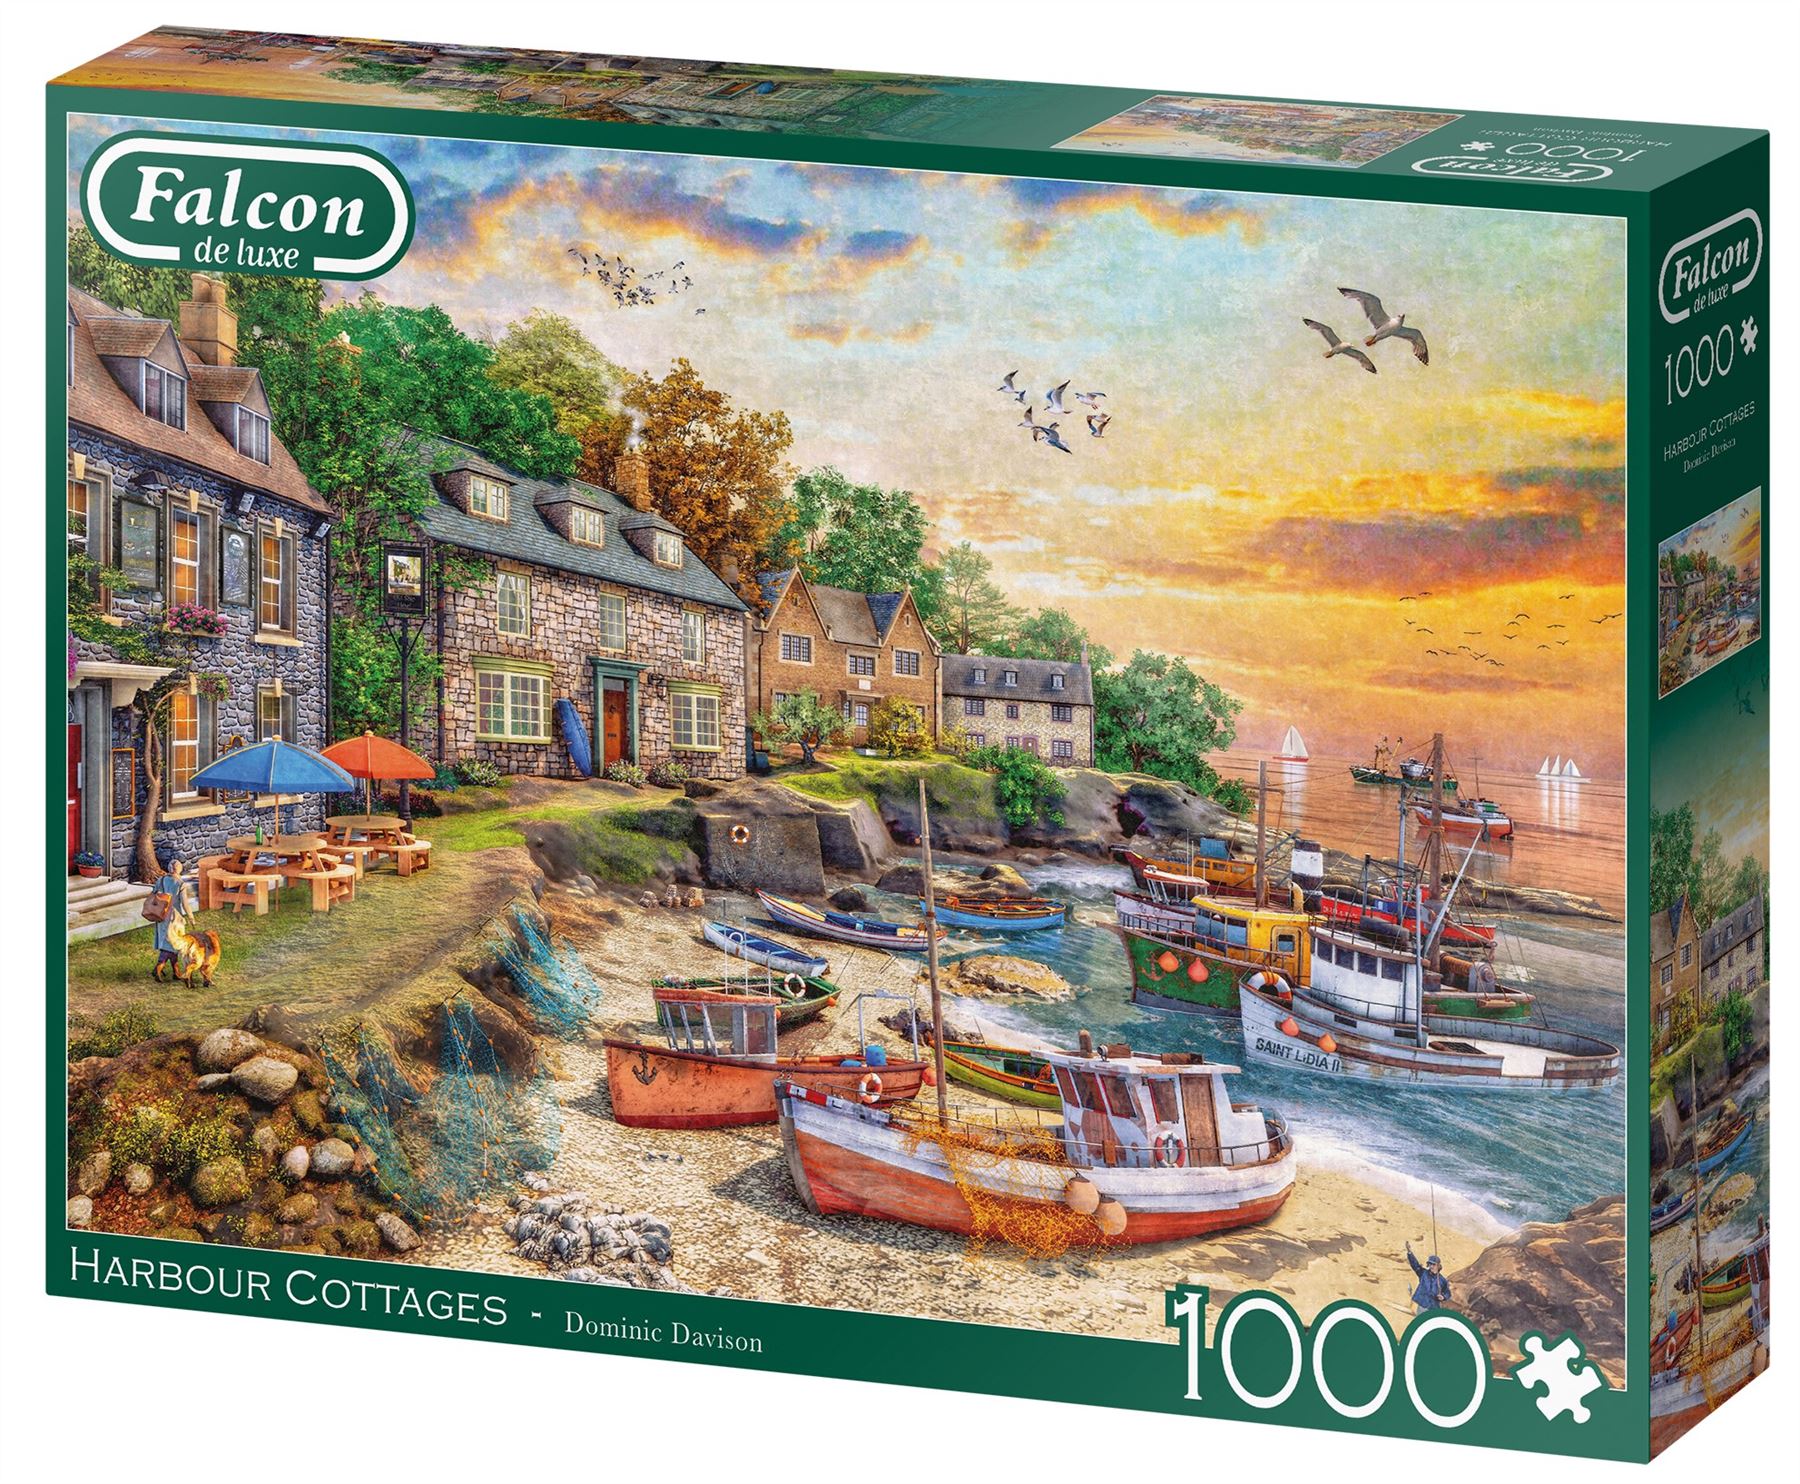 Harbour Cottages 1000 Piece Jigsaw Puzzle box 2